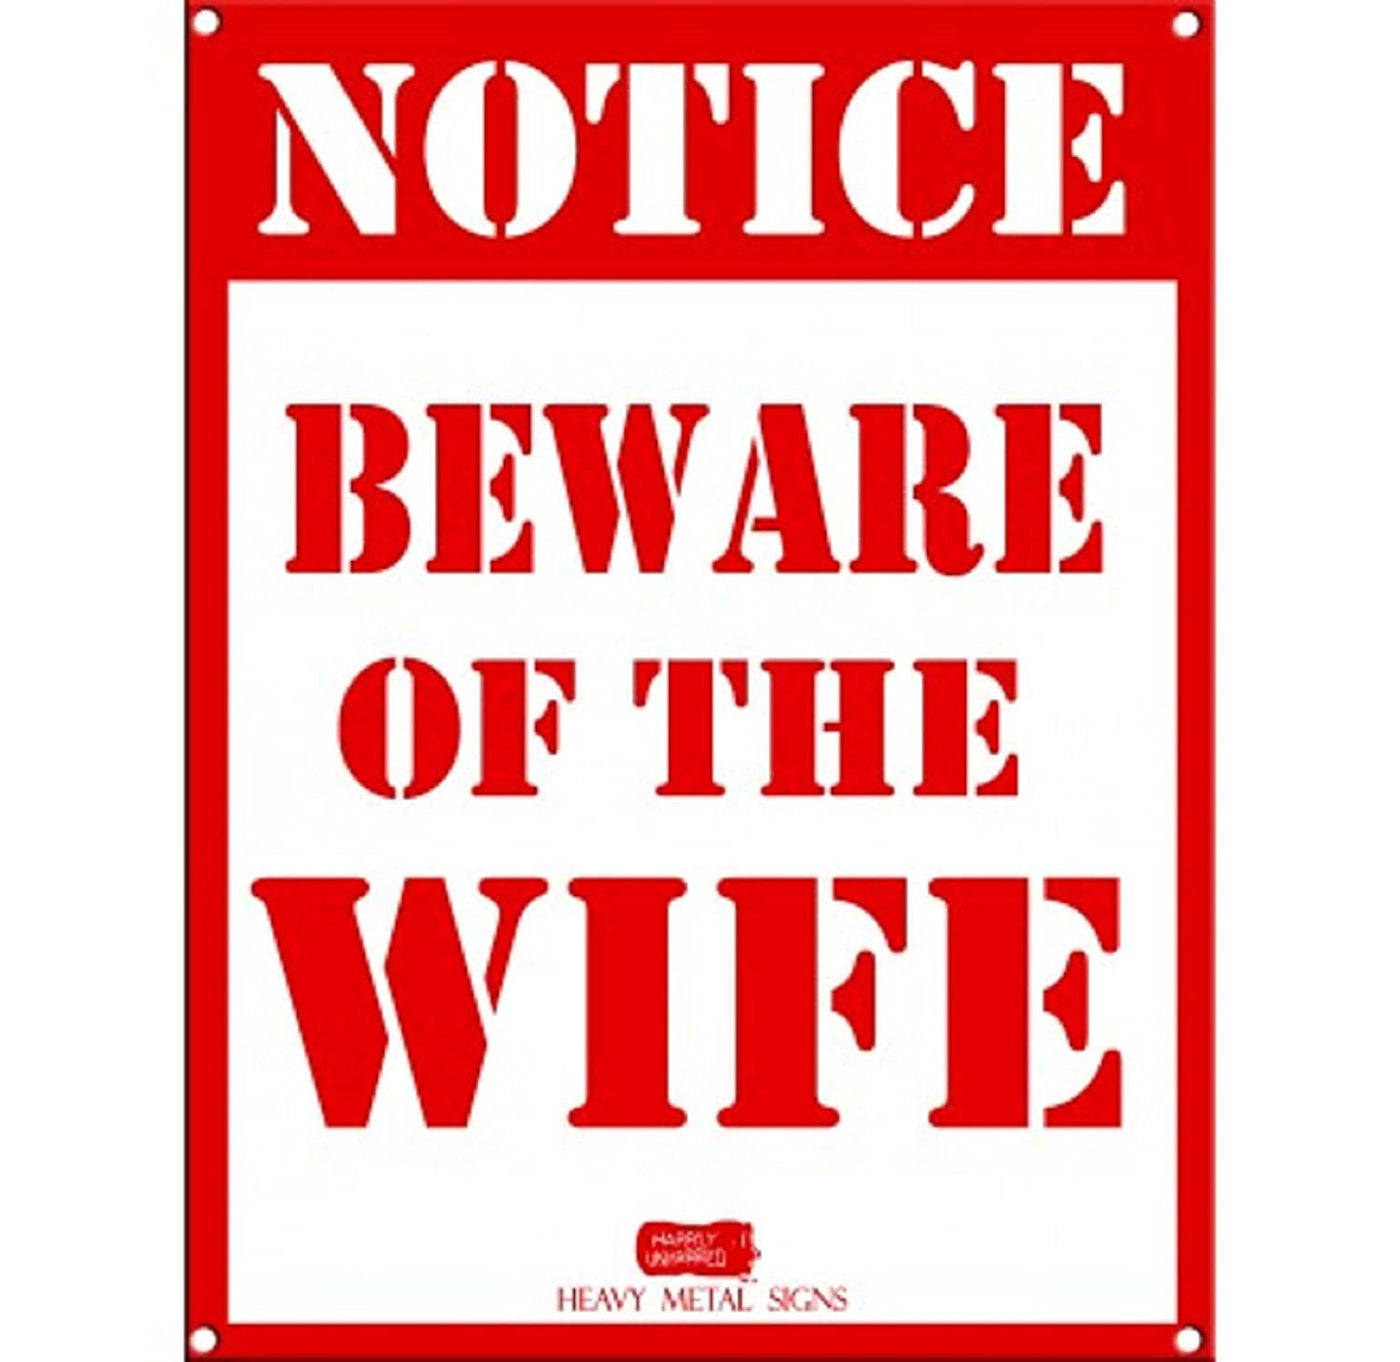 Beware of wife Metal Sign.jpg